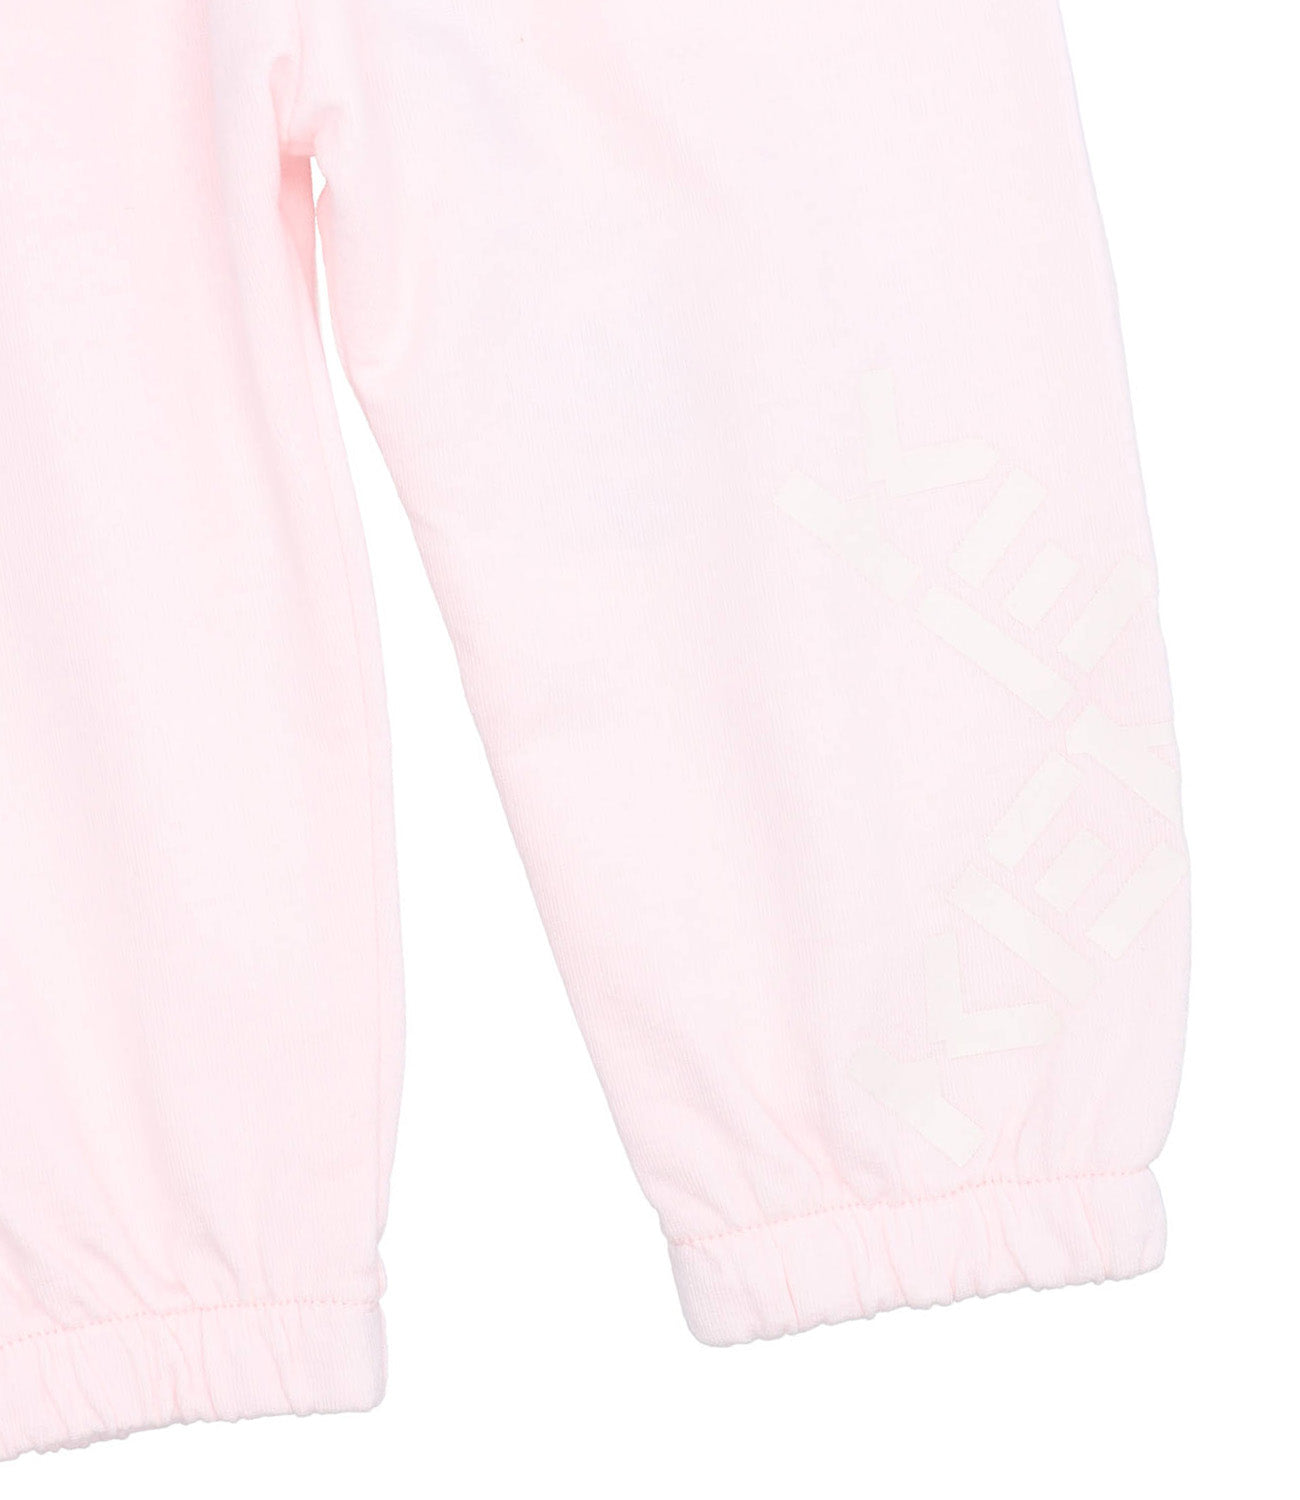 Pale Pink Sporty Pants